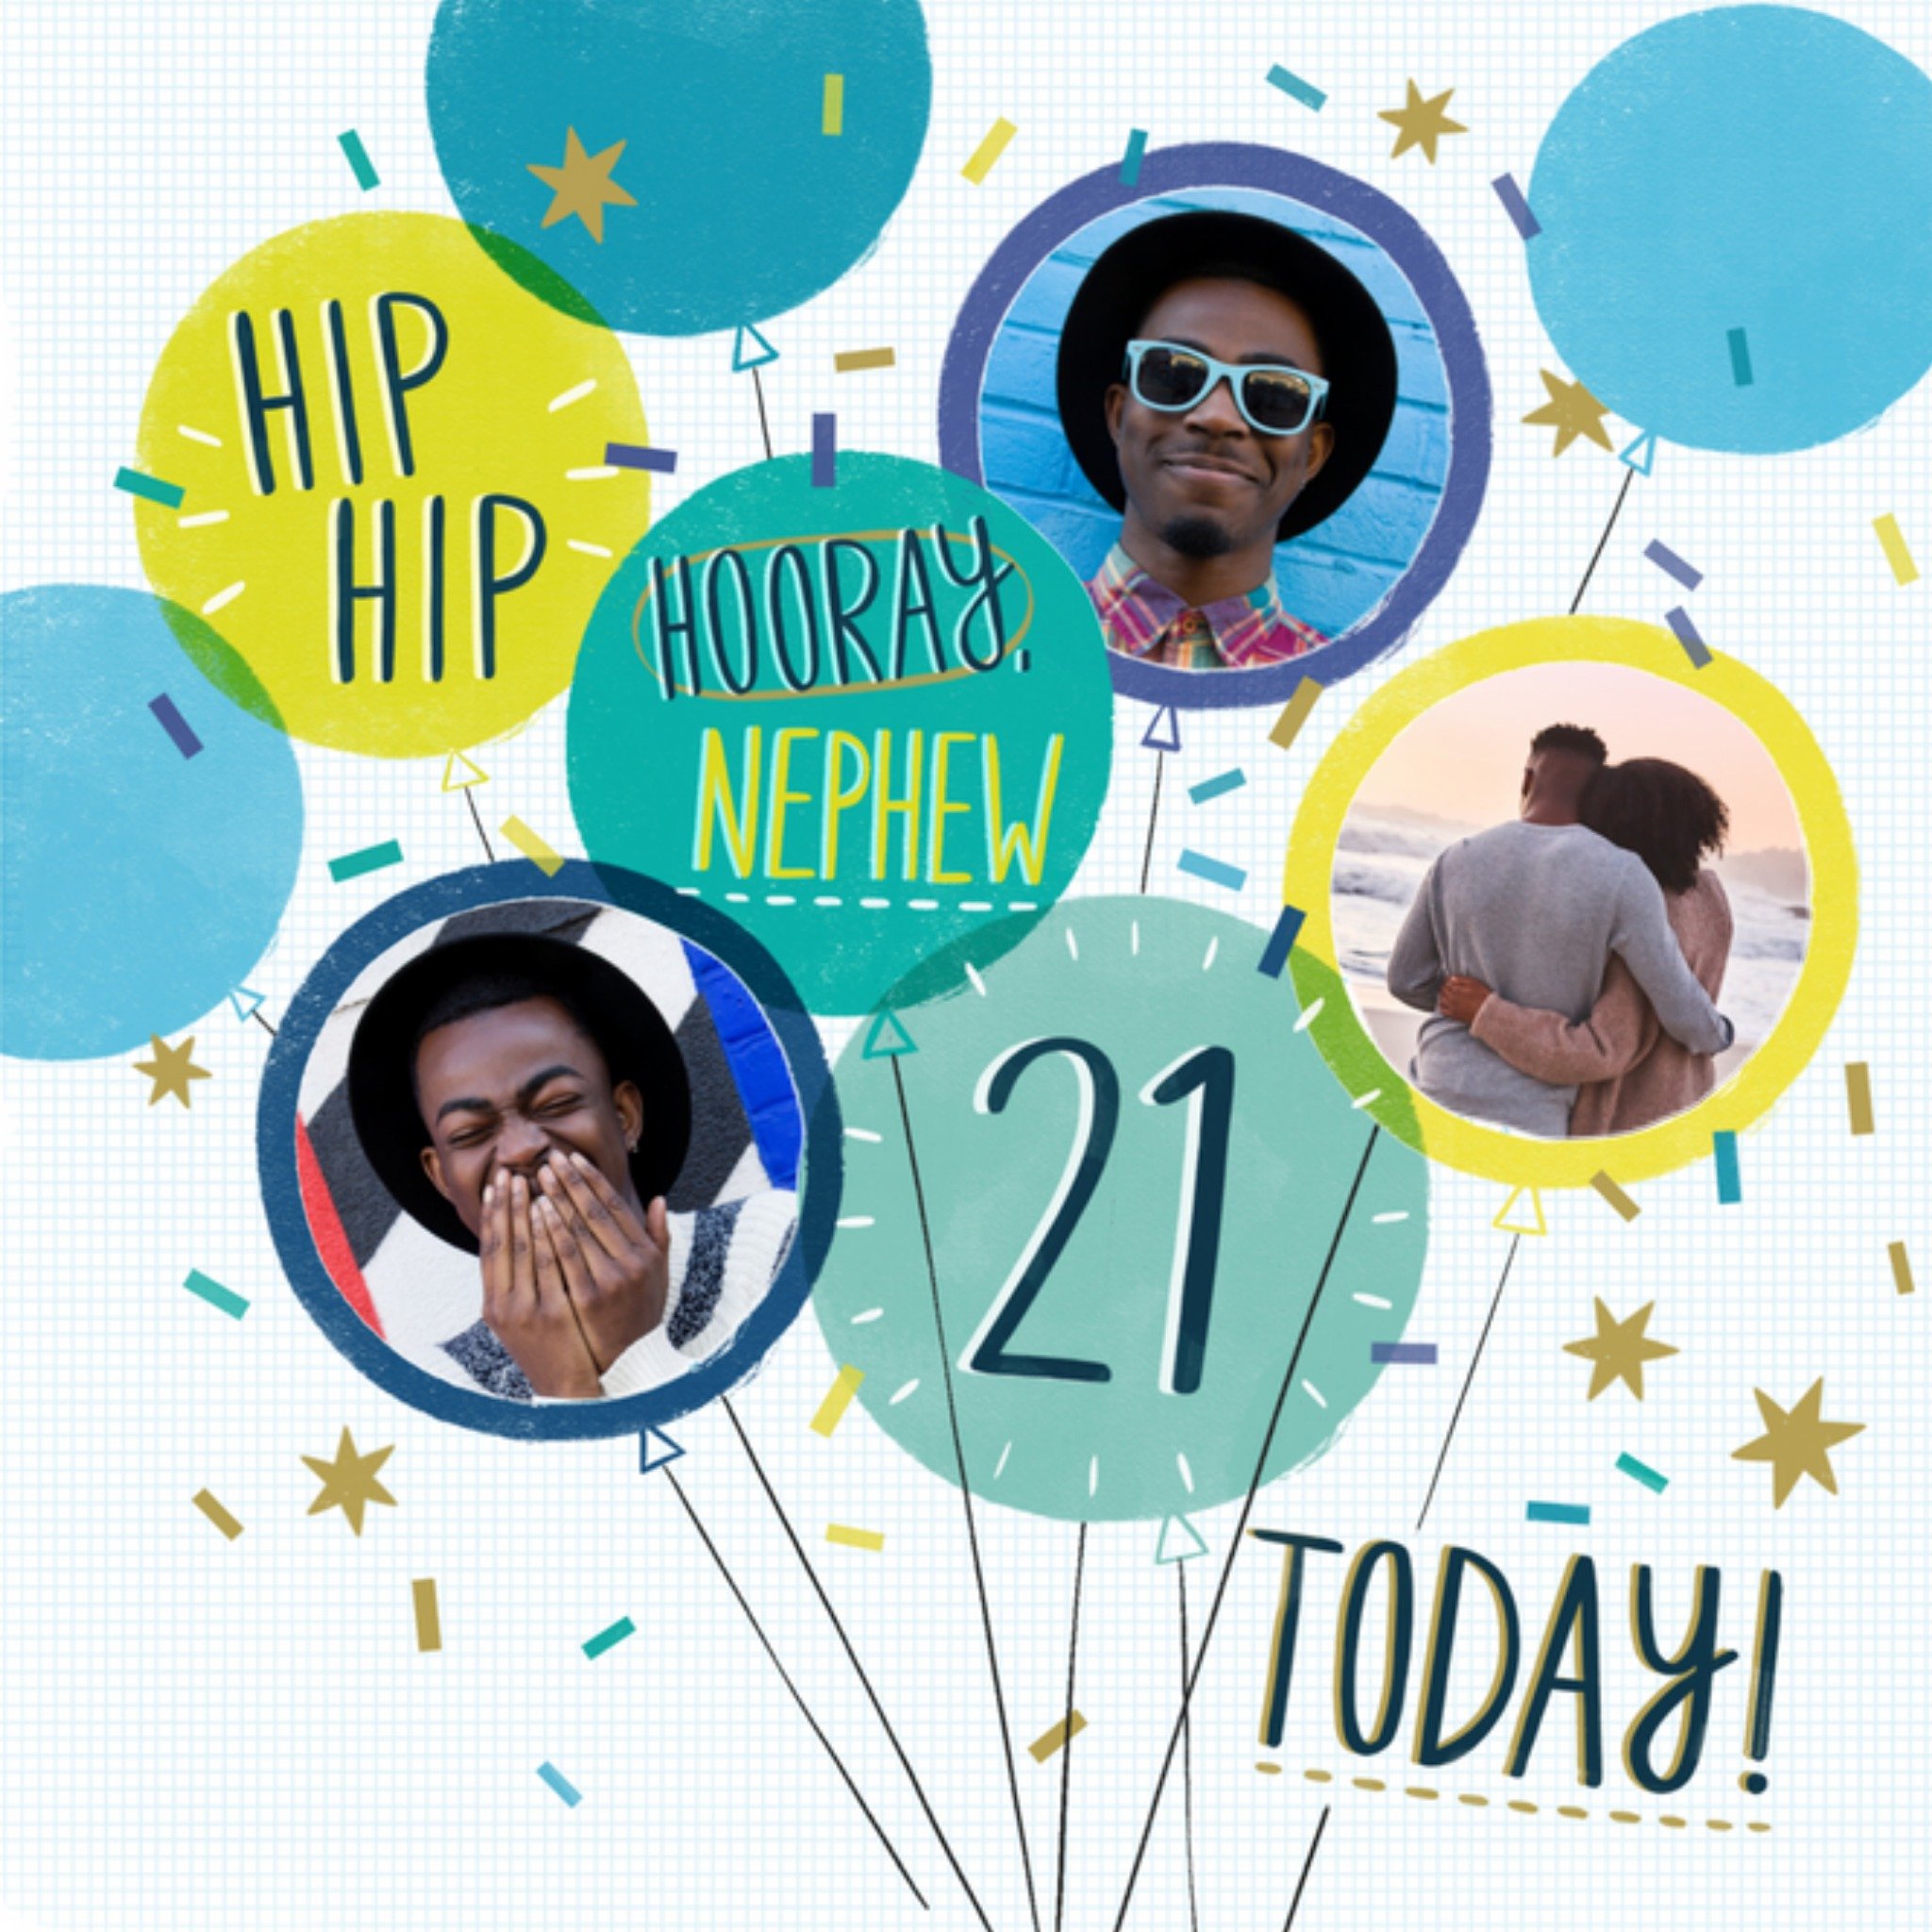 Verjaardagskaart - Hip hip hooray